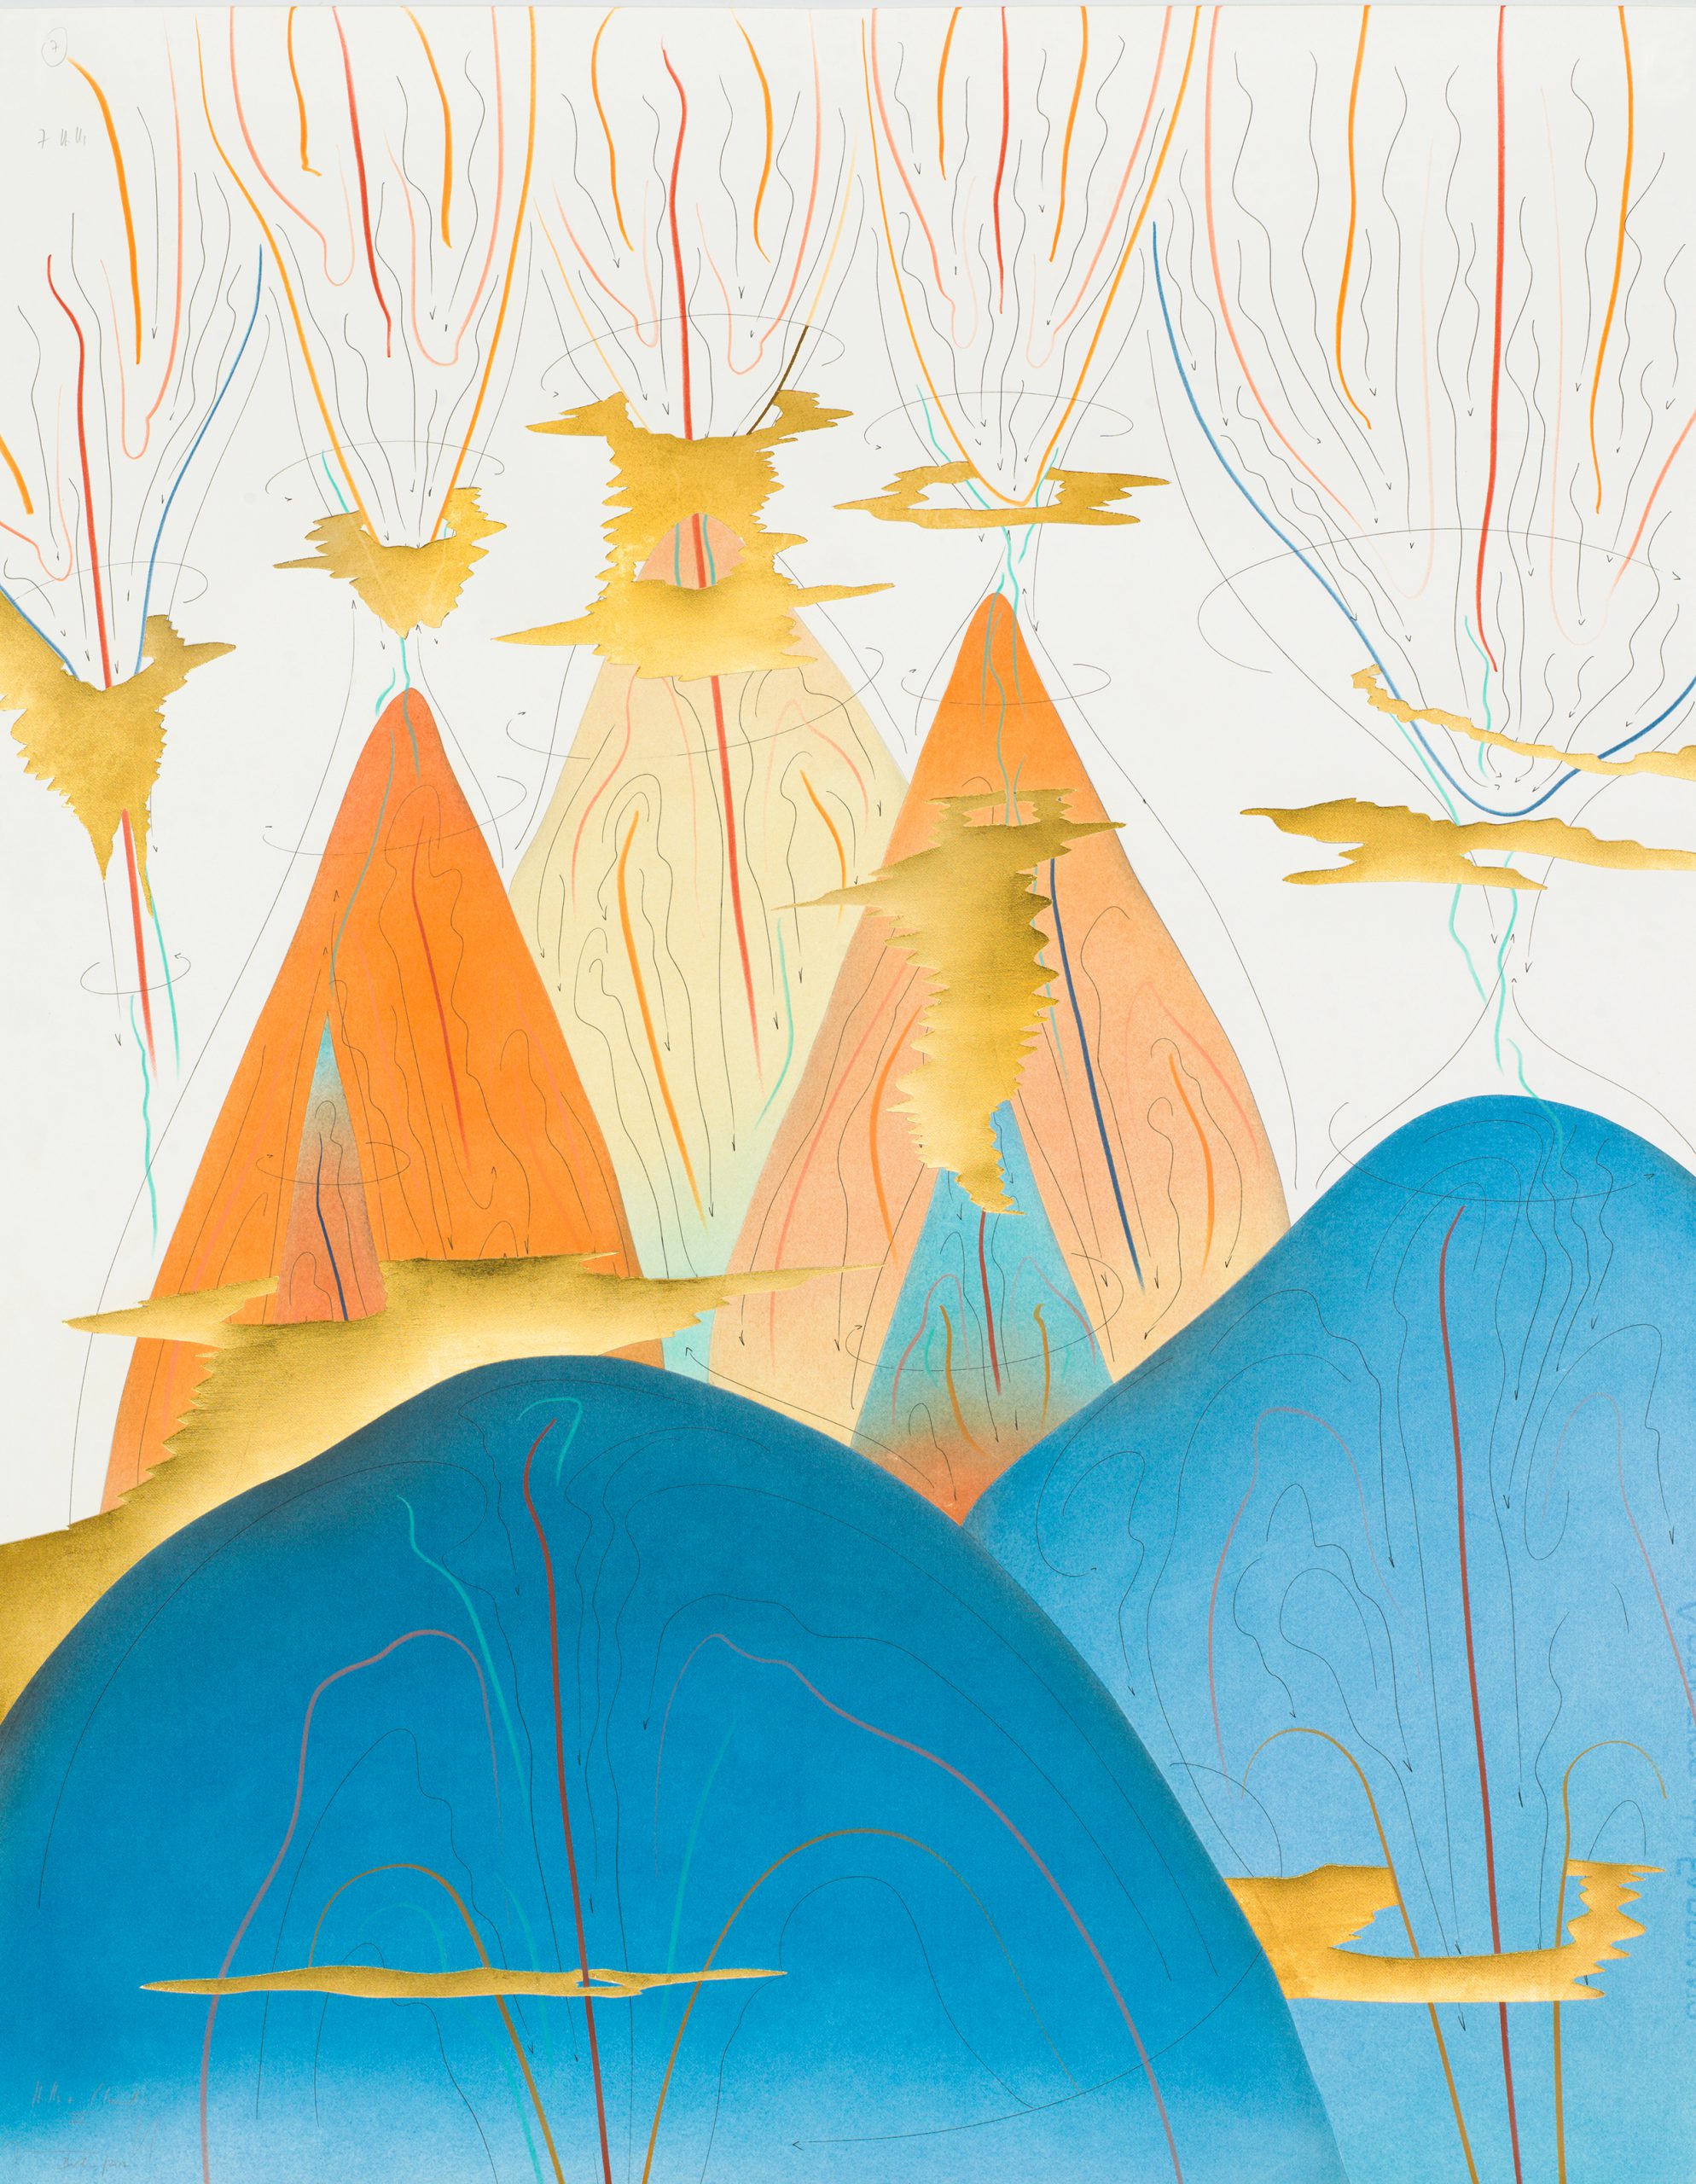 Hills+Clouds VII Berlin 2017 88 x 69 cm Tinte, Blattgold, Pastell, Ölkreide, Graphit auf Papier, Unikat, Signiert Ink, gold leaf, pastels, oil chalks, graphite on paper, unique work, signed WV 2017-178